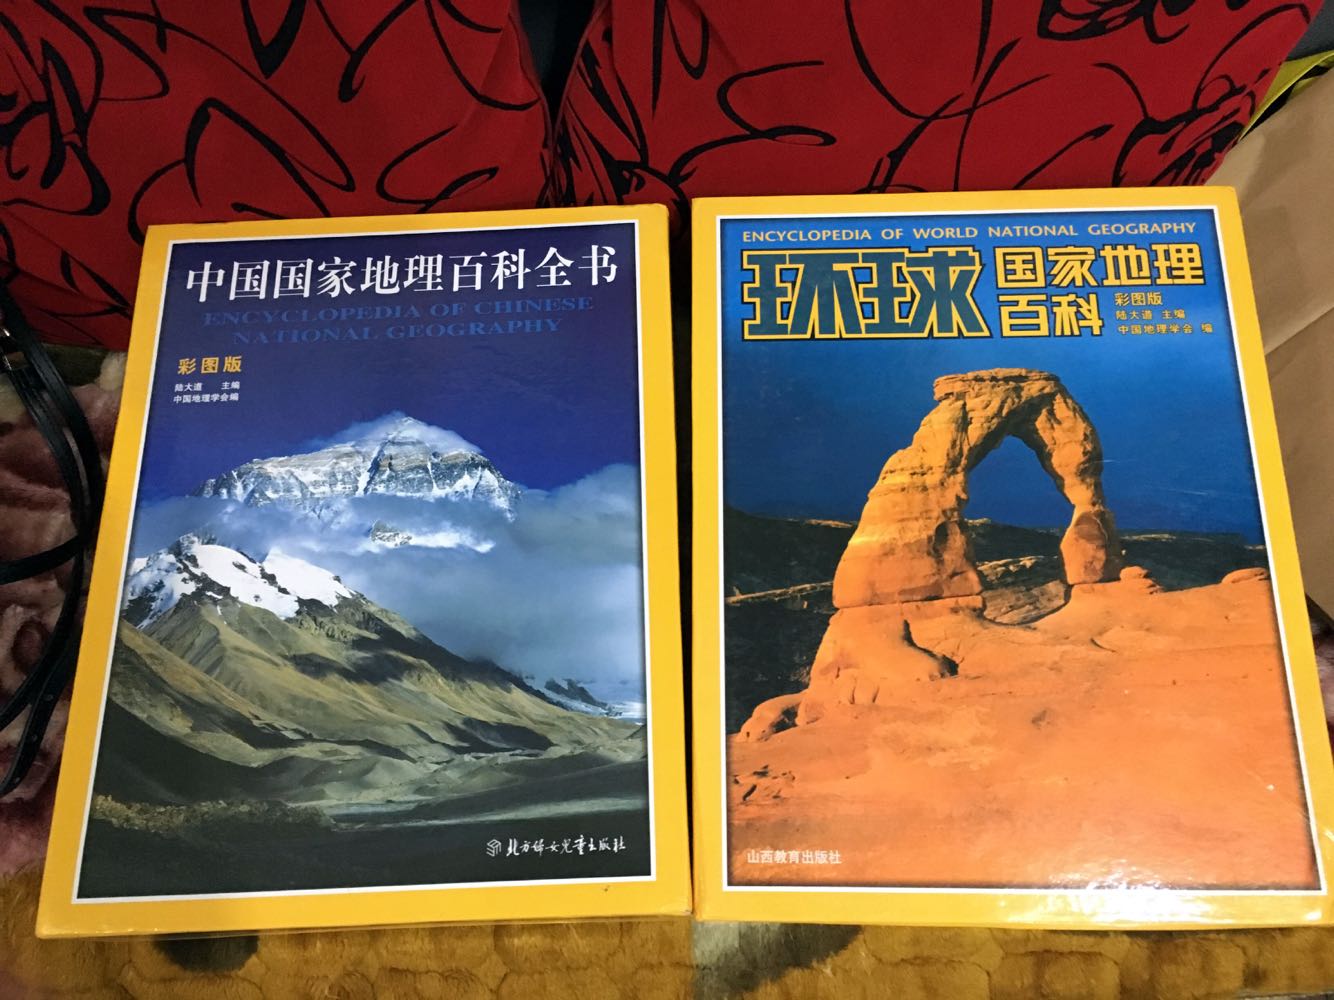 以前买过一套中国国家地理百科，最近趁活动又买了一套环球国家地理百科，包装非常精美，内容也很丰富。唯一遗憾的是，出版日期过早，近几年内容都没有更新。我和老妈都很喜欢看，打算等以后有了宝宝，和宝宝一起看～